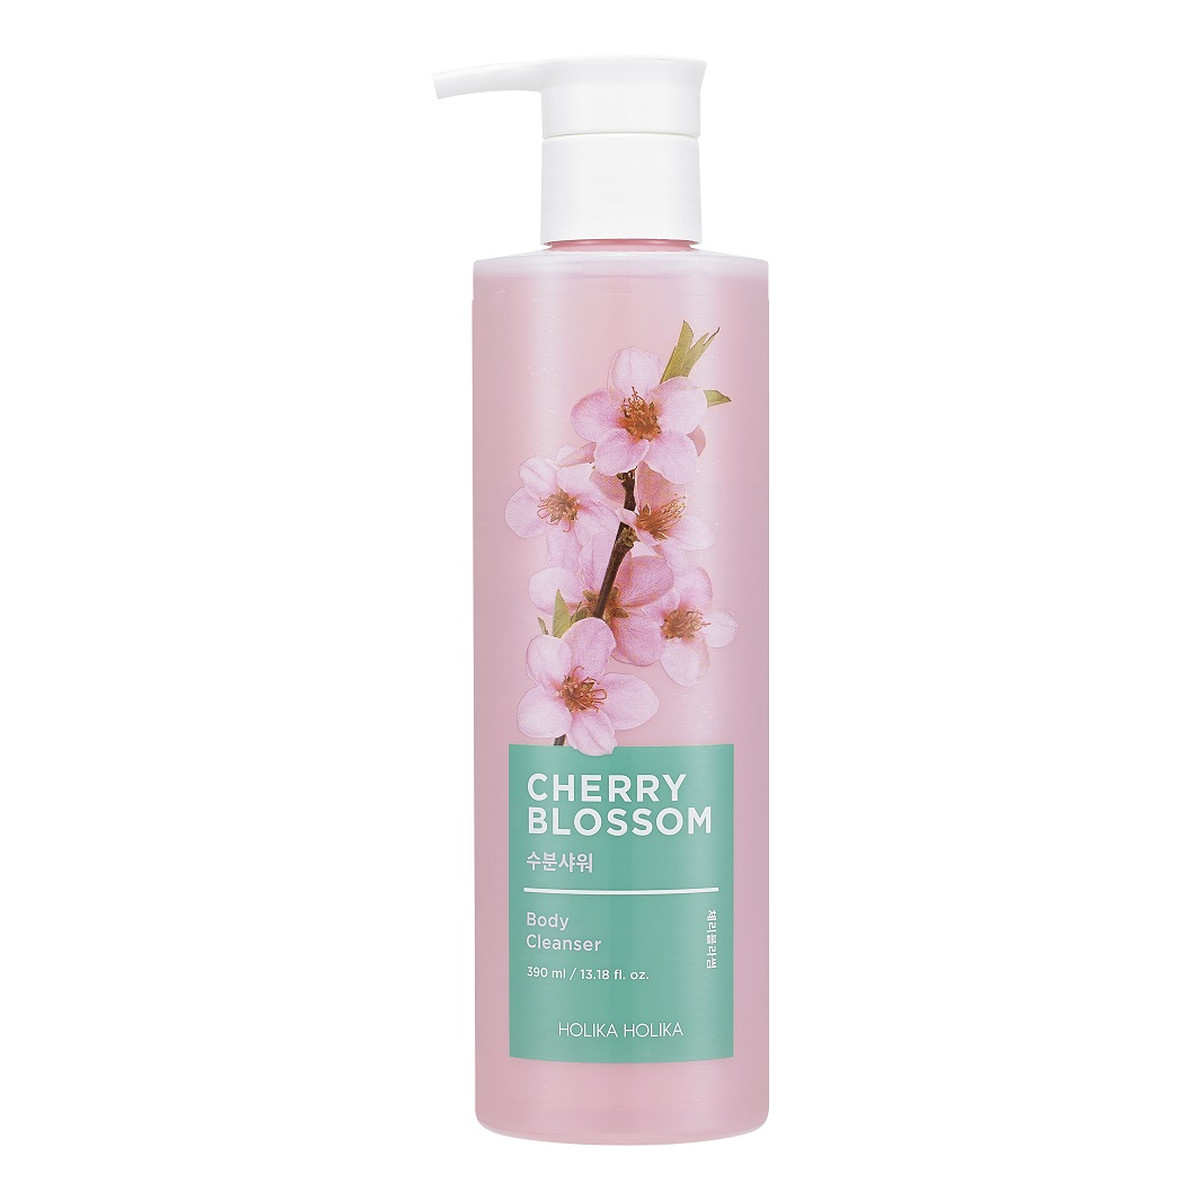 Holika Holika Cherry Blossom Body Cleanser kojący Żel pod prysznic 390ml